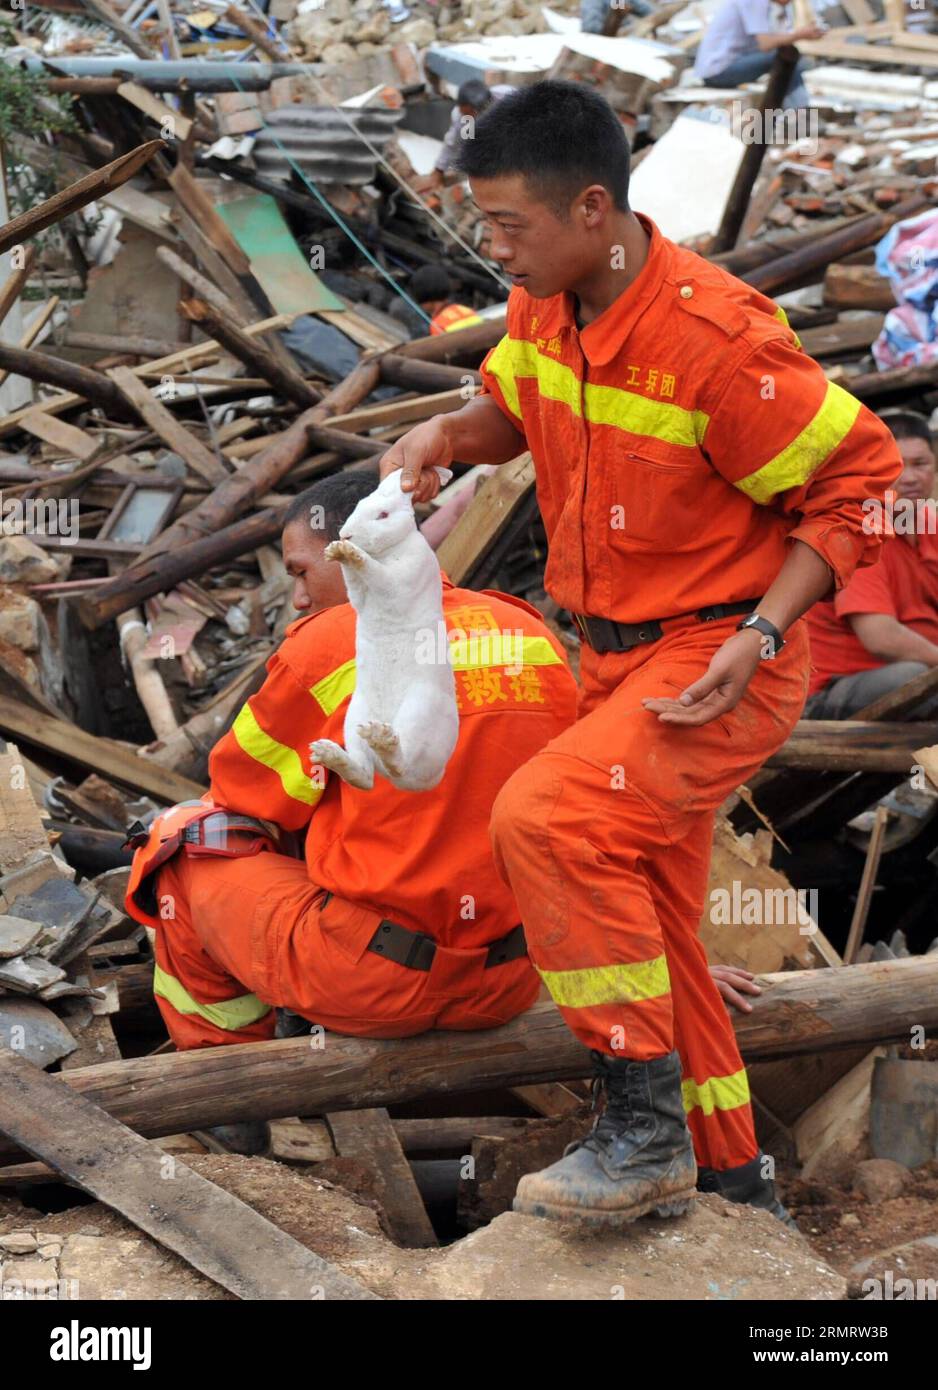 Un soccorritore trova un coniglio mentre cerca i sopravvissuti tra le rovine dopo che un terremoto di magnitudo 6,5 ha colpito Longtoushan Town sotto Ludian County di Zhaotong, nella provincia dello Yunnan della Cina sud-occidentale, 4 agosto 2014. Longtoushan Town è l'epicentro del terremoto, che ha colpito alle 16:30 domenica (ora di Pechino) con una profondità di 12 km Alle 14:00 di lunedì, il terremoto ha ucciso 398 persone e ne ha feriti 1.801, colpendo più di un milione di altre a Zhaotong e Qujing. ) (lmm) CHINA-YUNNAN-LUDIAN-EARTHQUAKE-EPICENTER-RESCUE (CN) ChenxHaining PUBLICATIONxNOTxINxCHN un soccorritore trova un coniglio durante la ricerca Foto Stock